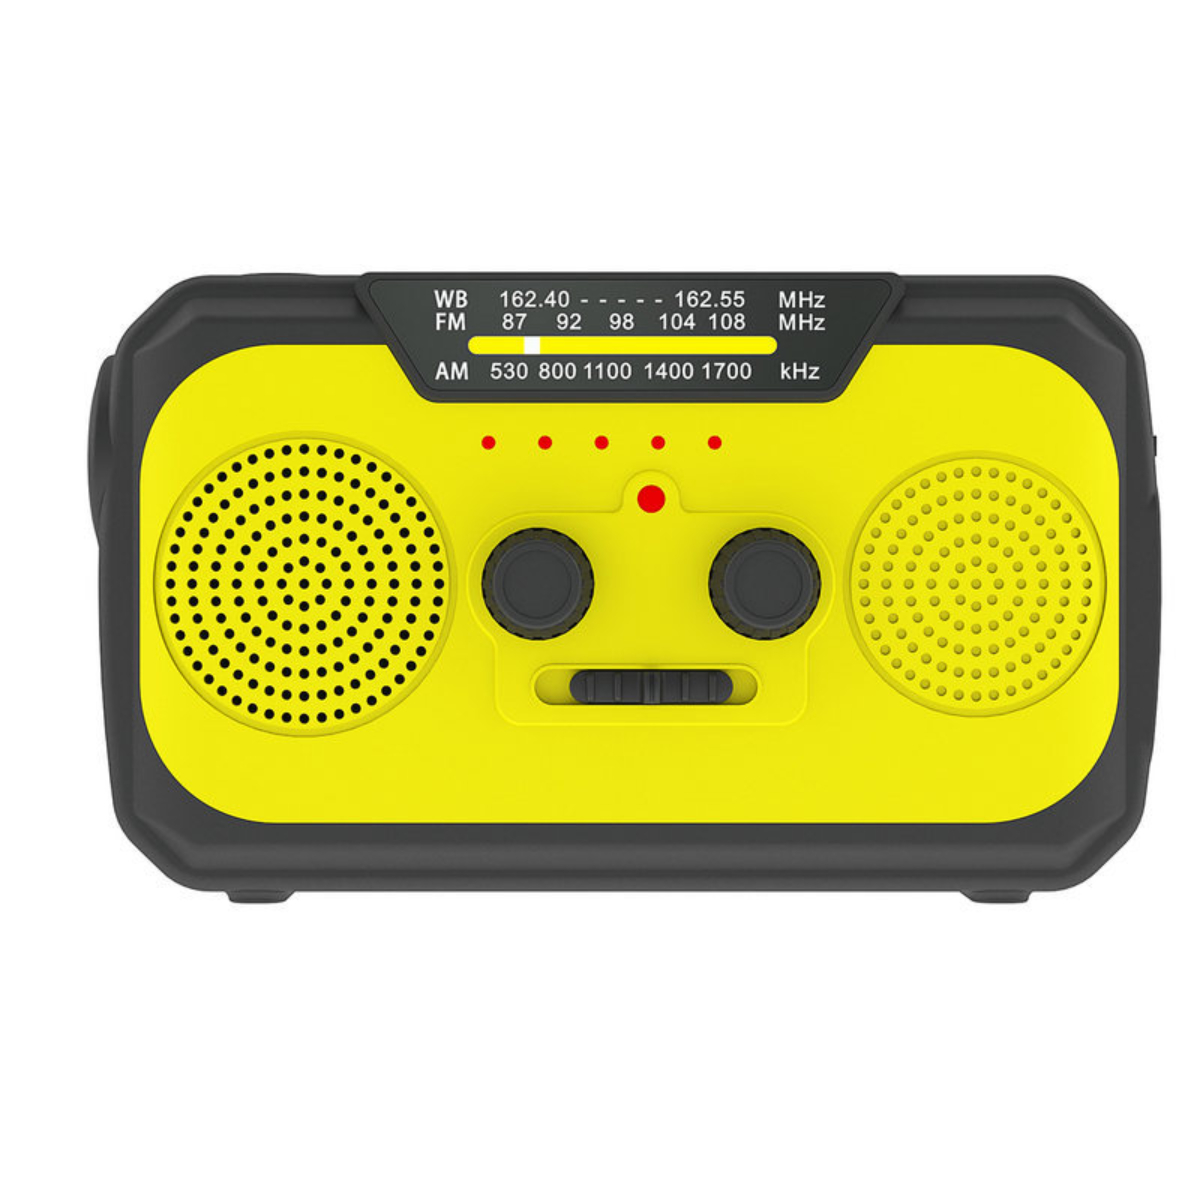 SYNTEK Radio Gelb Multifunktions-Handkurbel Stromerzeuger Internetradio, mit Solarradio AM, Notrufempfänger gelb FM